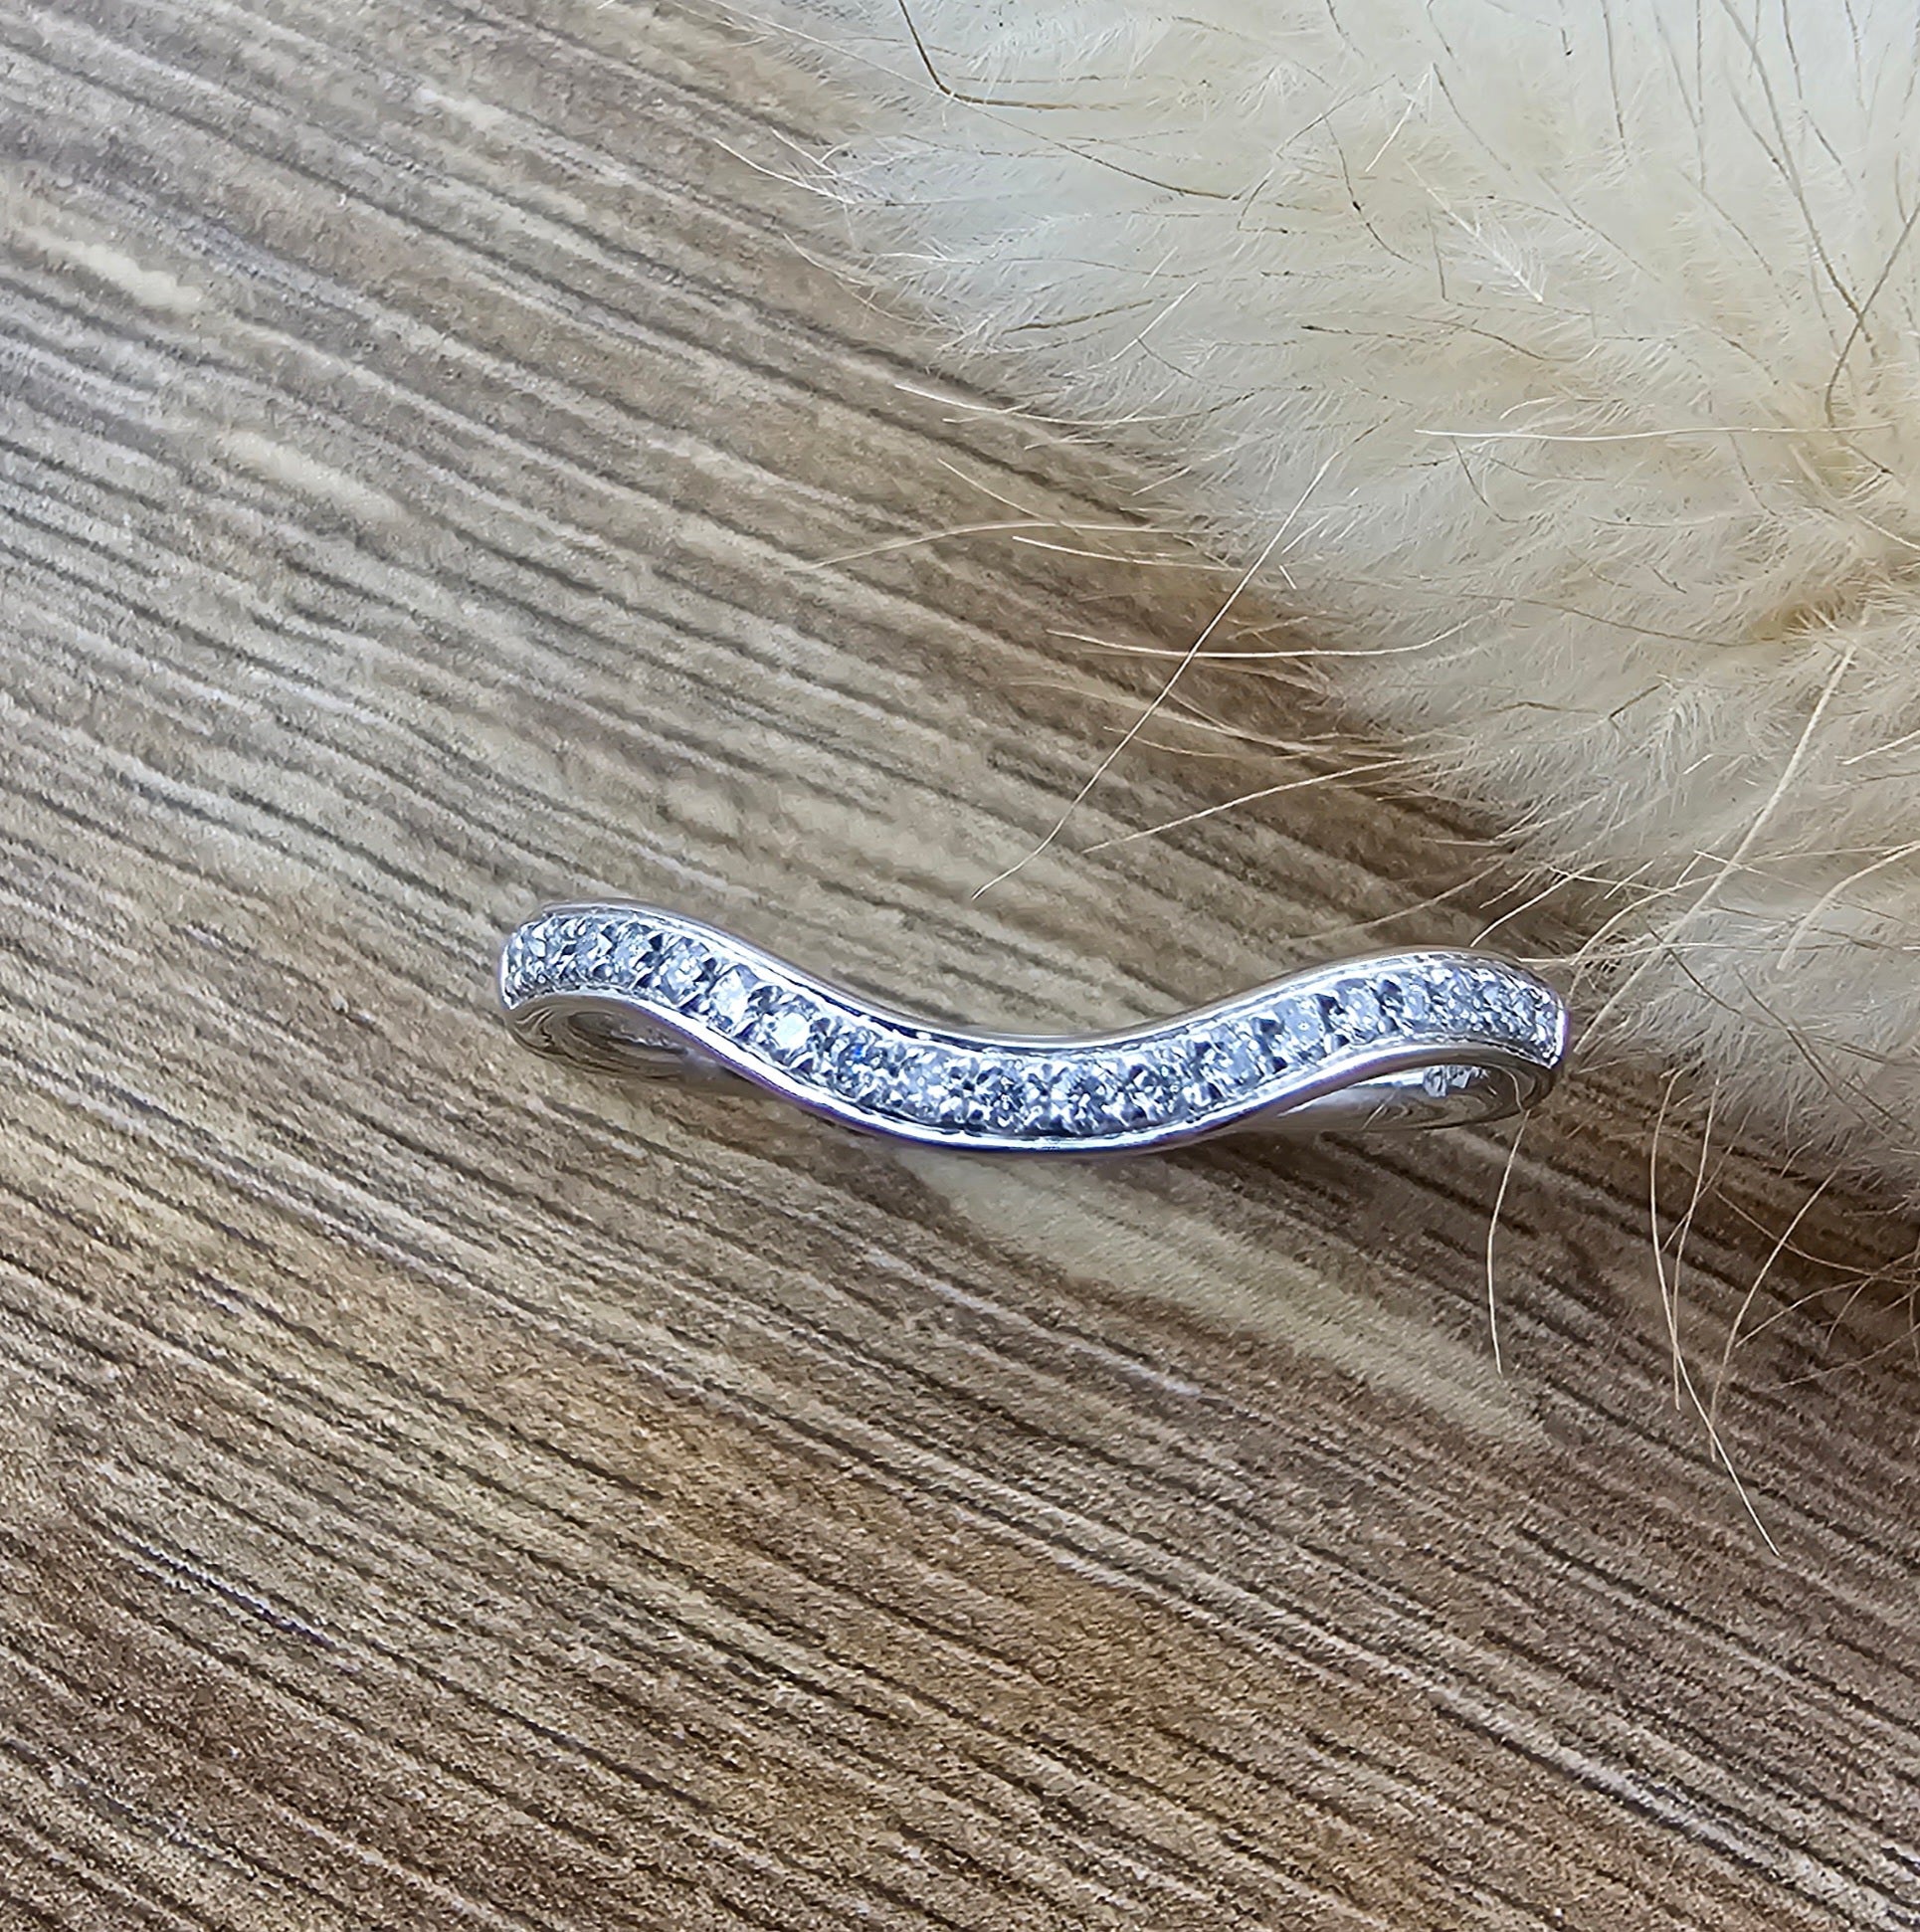 Diamond set curve shaped band